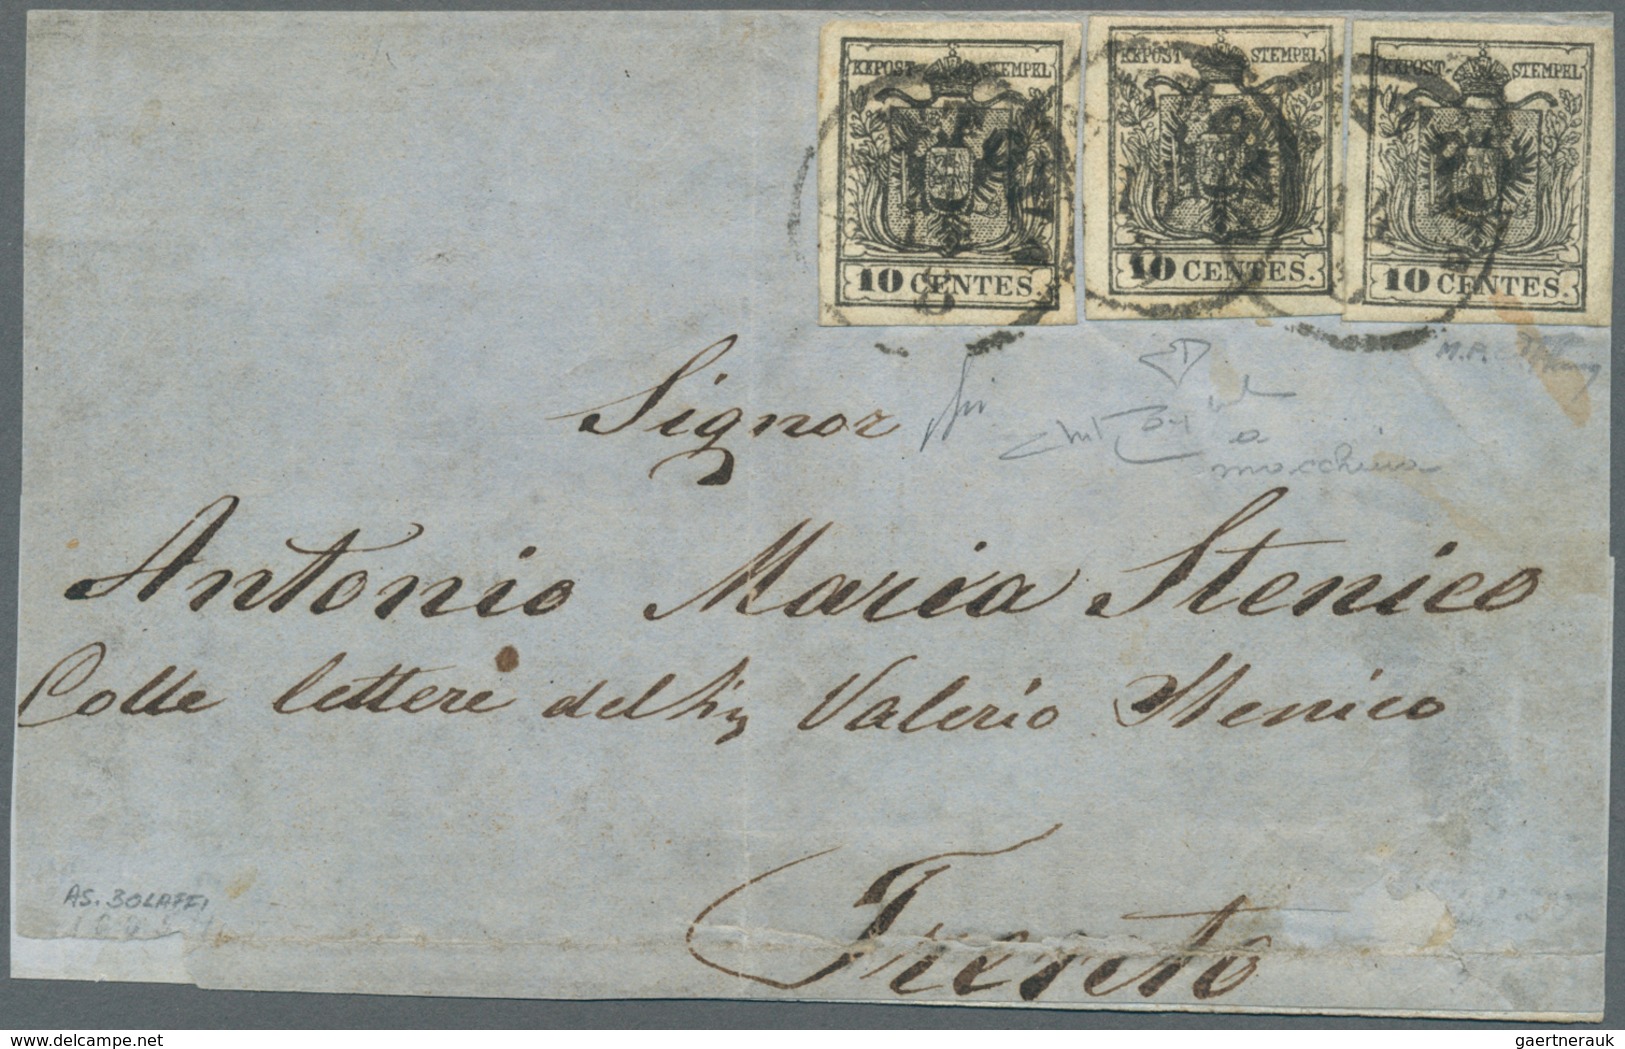 Österreich - Lombardei Und Venetien: 1857, 3 X 10 C Schwarz, Maschinenpapier, Alle Marken Vollrandig - Lombardy-Venetia